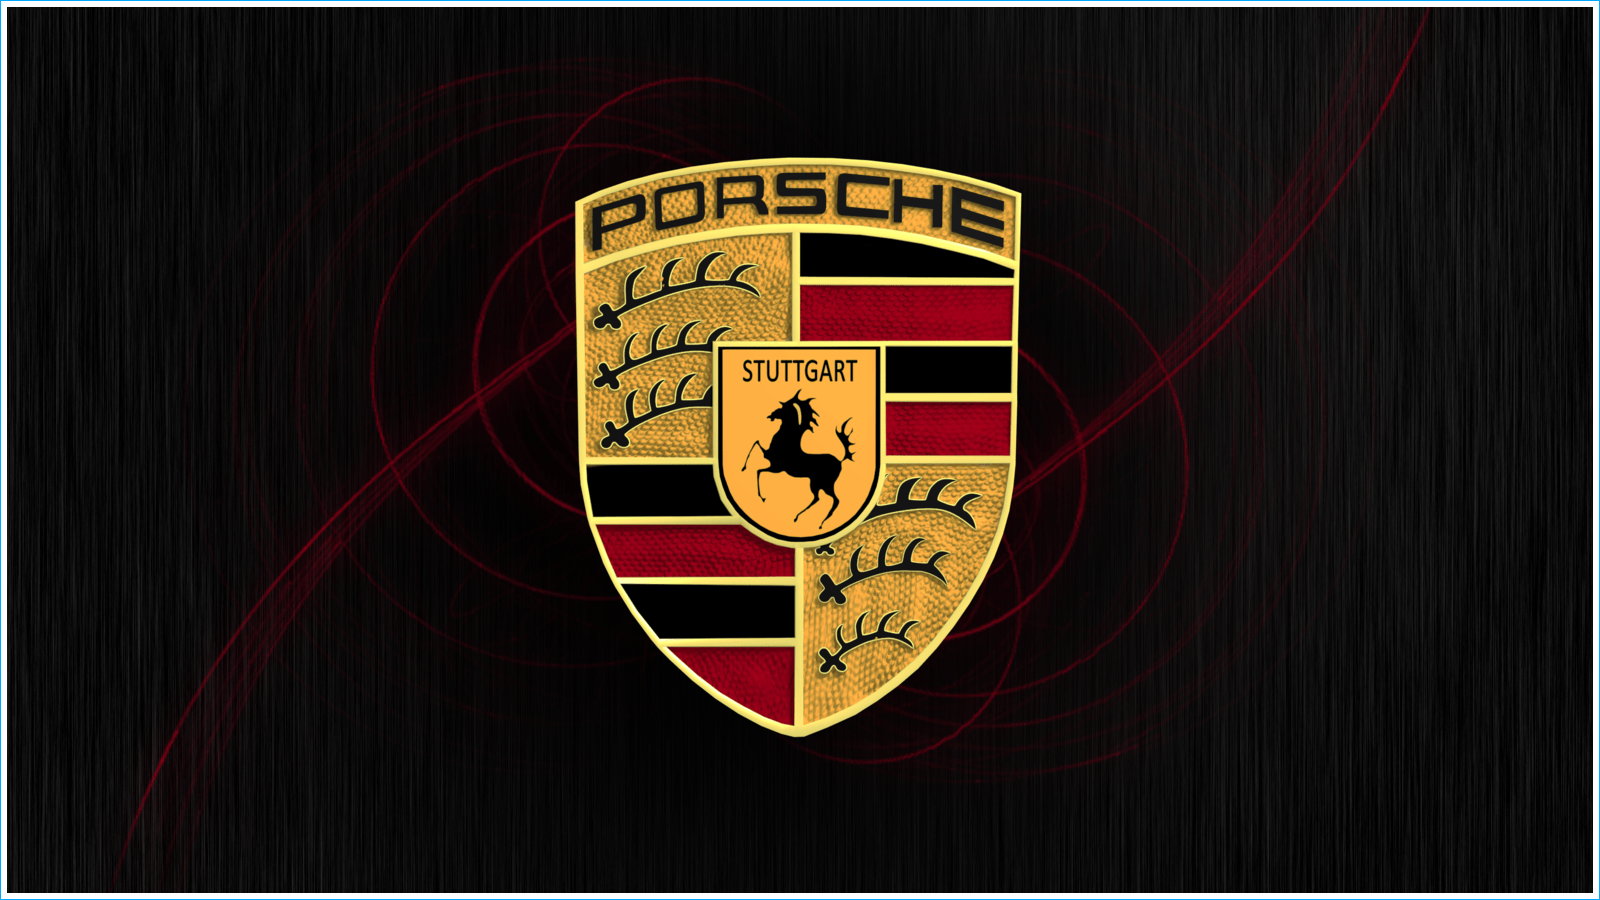 L'emblème de Porsche